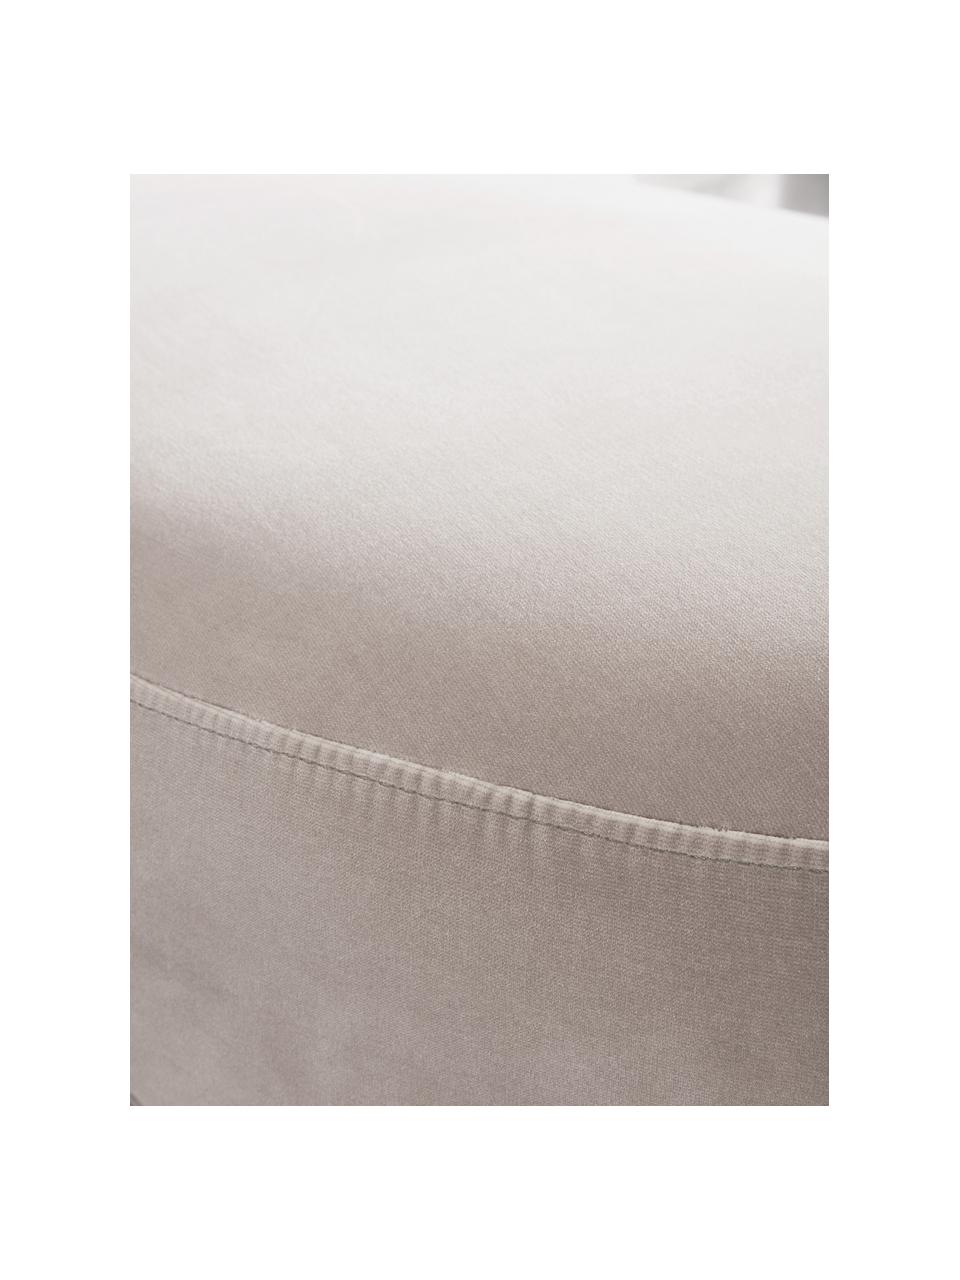 Samt-Sitzbank Coconino in Beige, gepolstert, Bezug: Baumwollsamt (89% Baumwol, Rahmen: Kiefernholz, Beige, B 160 x H 36 cm